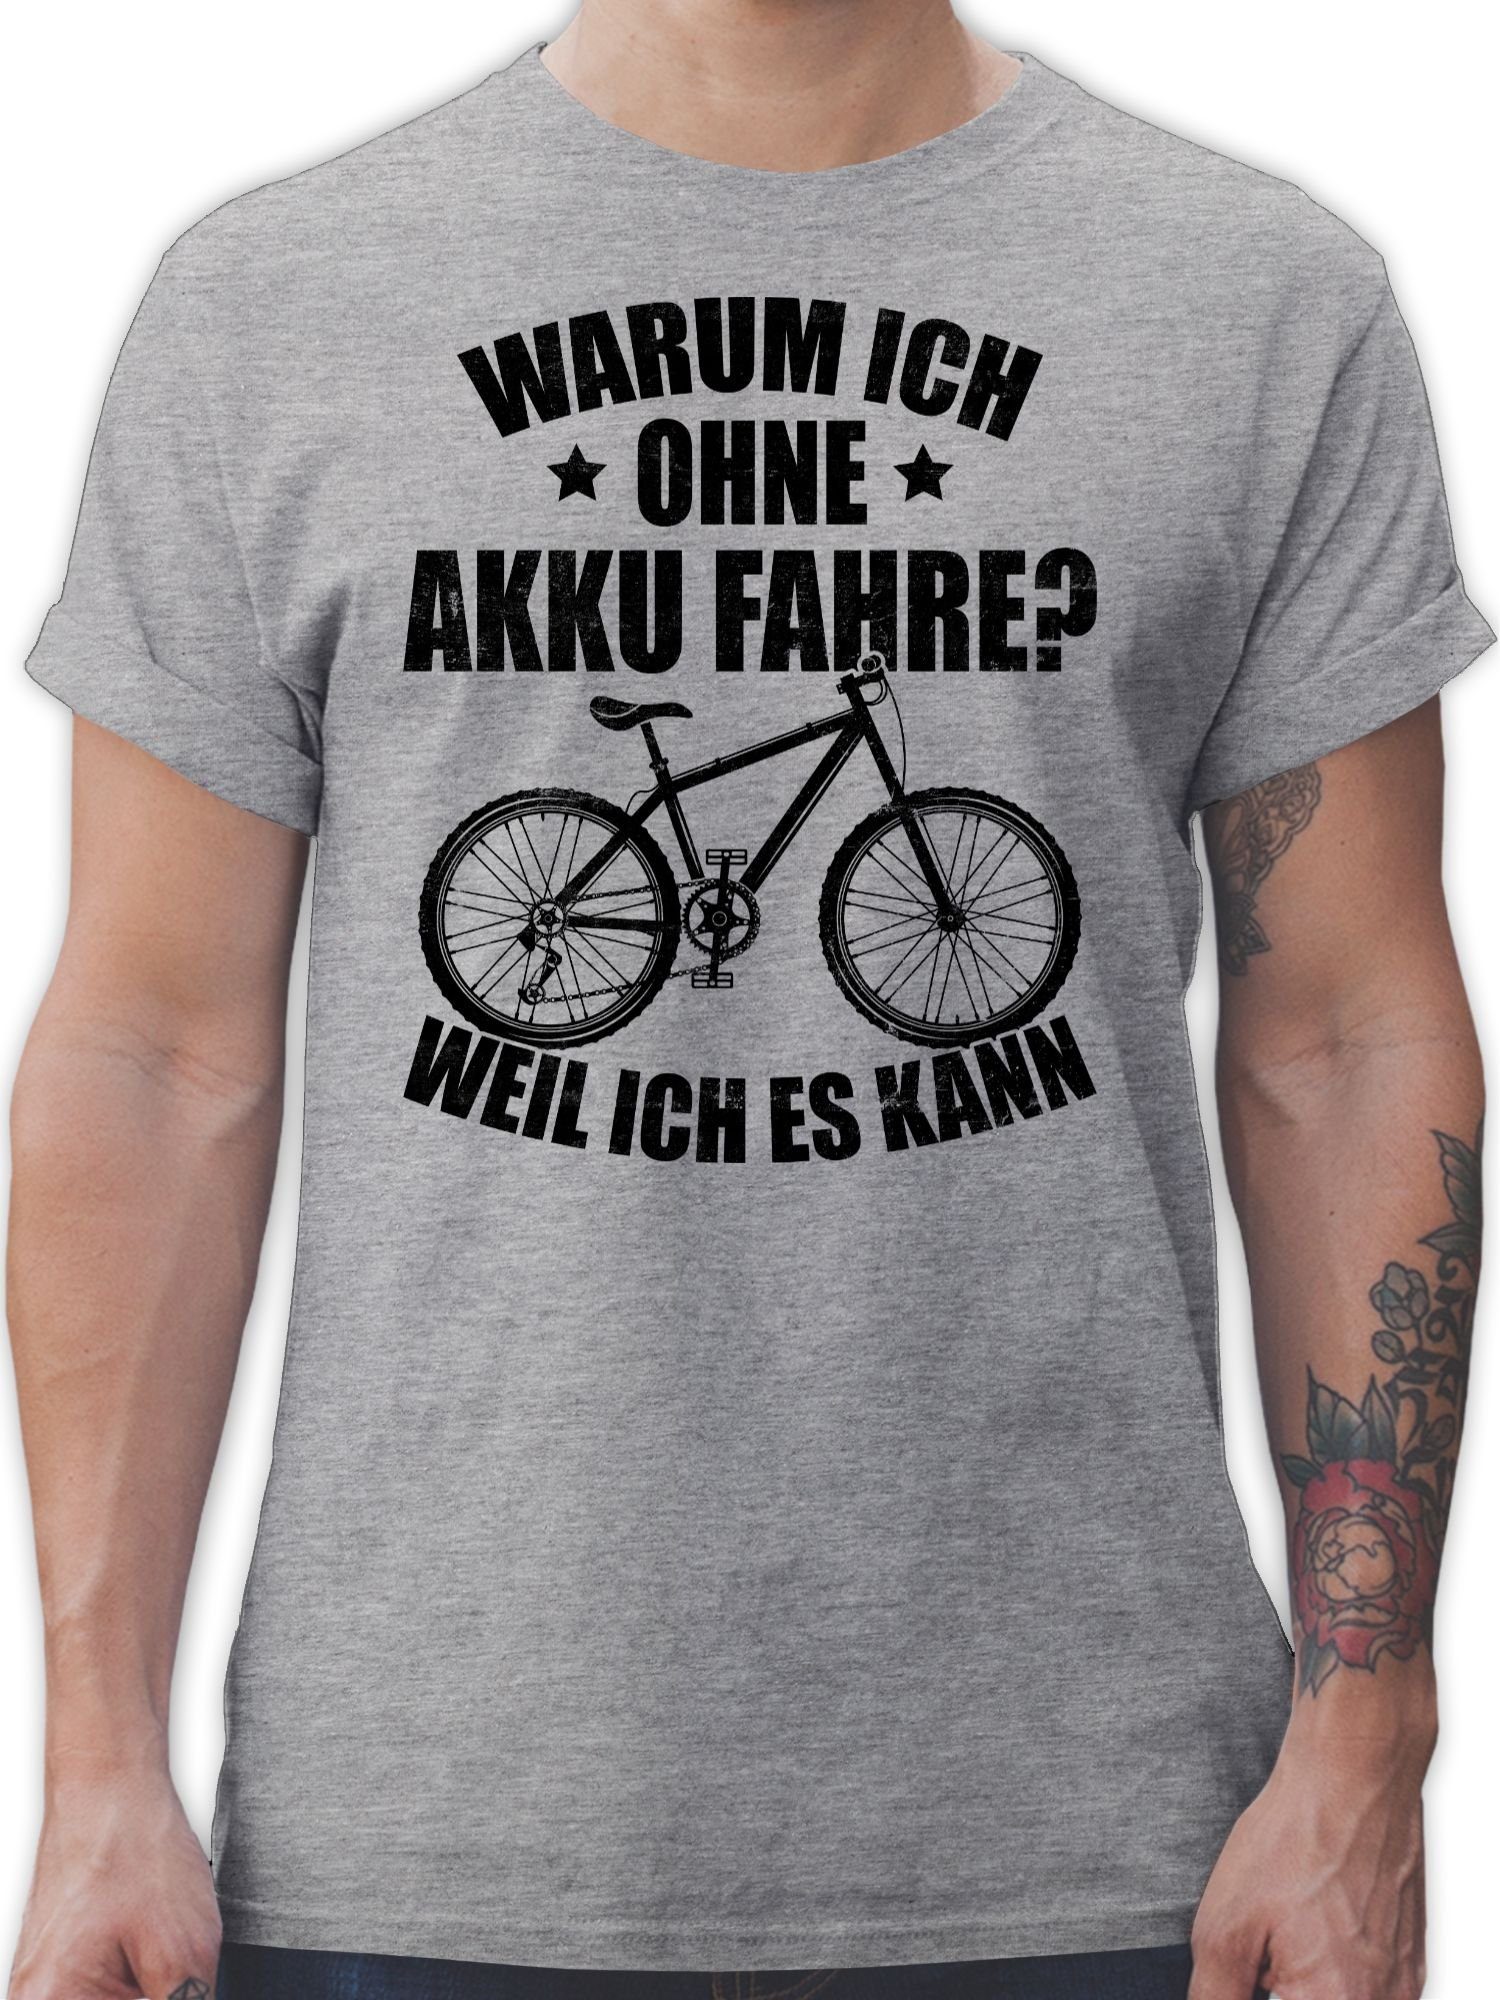 Shirtracer T-Shirt Warum ich ohne Akku fahre - weil ich es kann - schwarz Fahrrad Bekleidung Radsport 01 Grau meliert